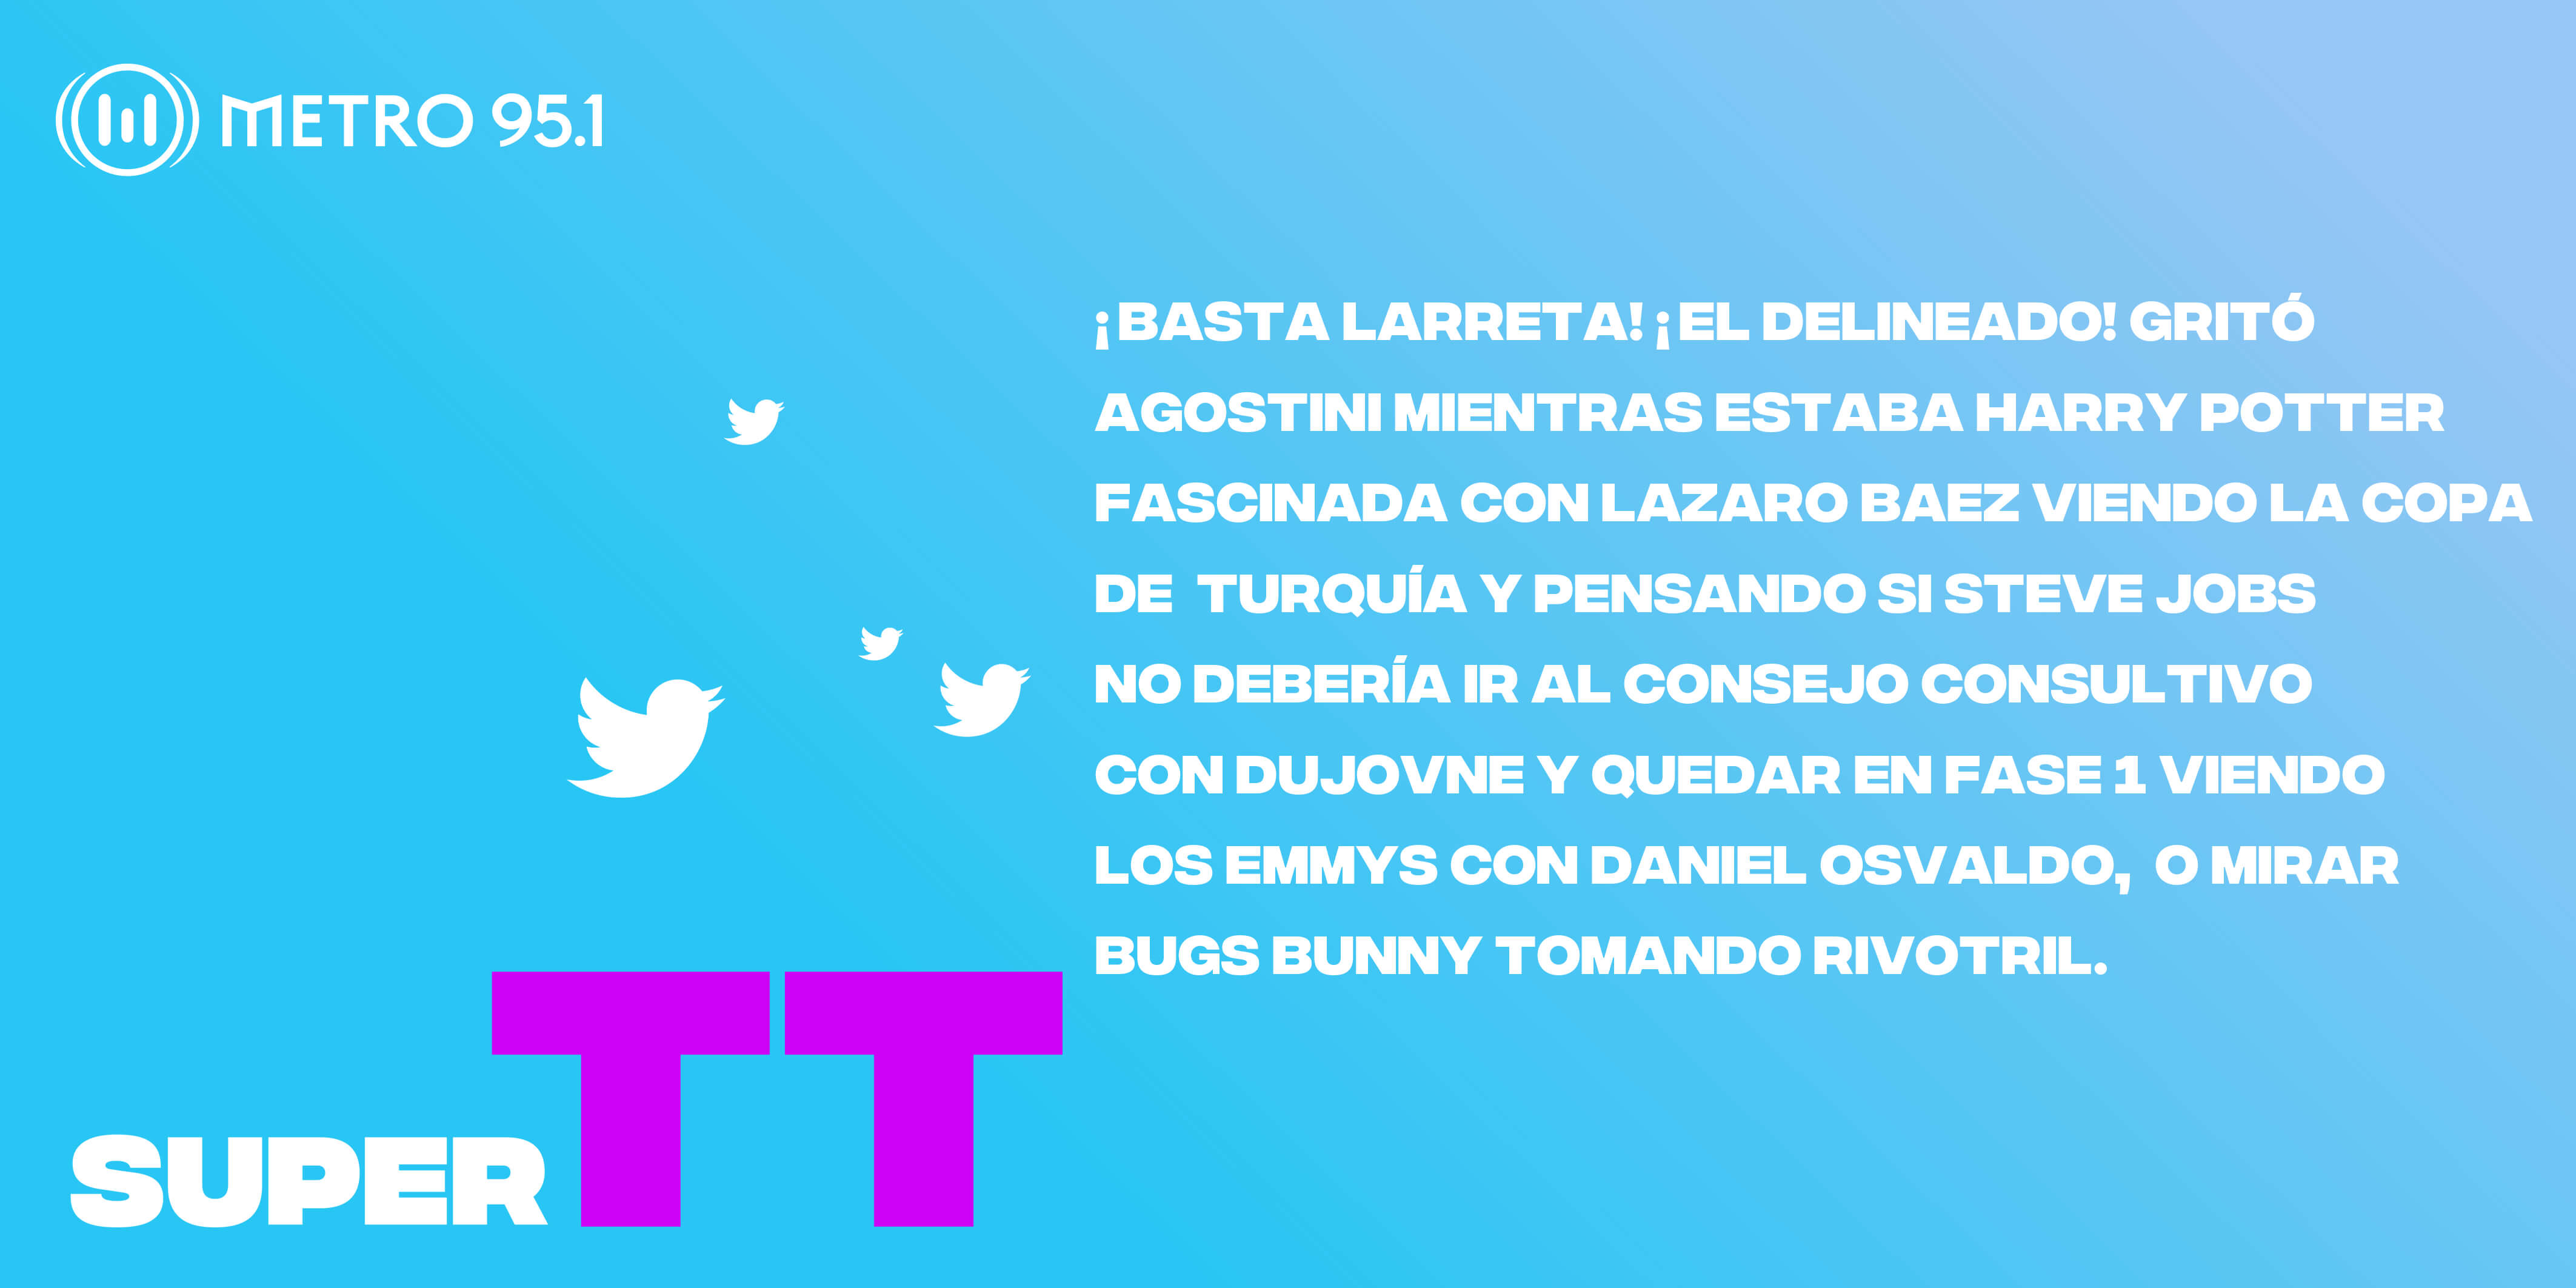 #SuperTT – Las noticias de la semana resumidas en un Tuit